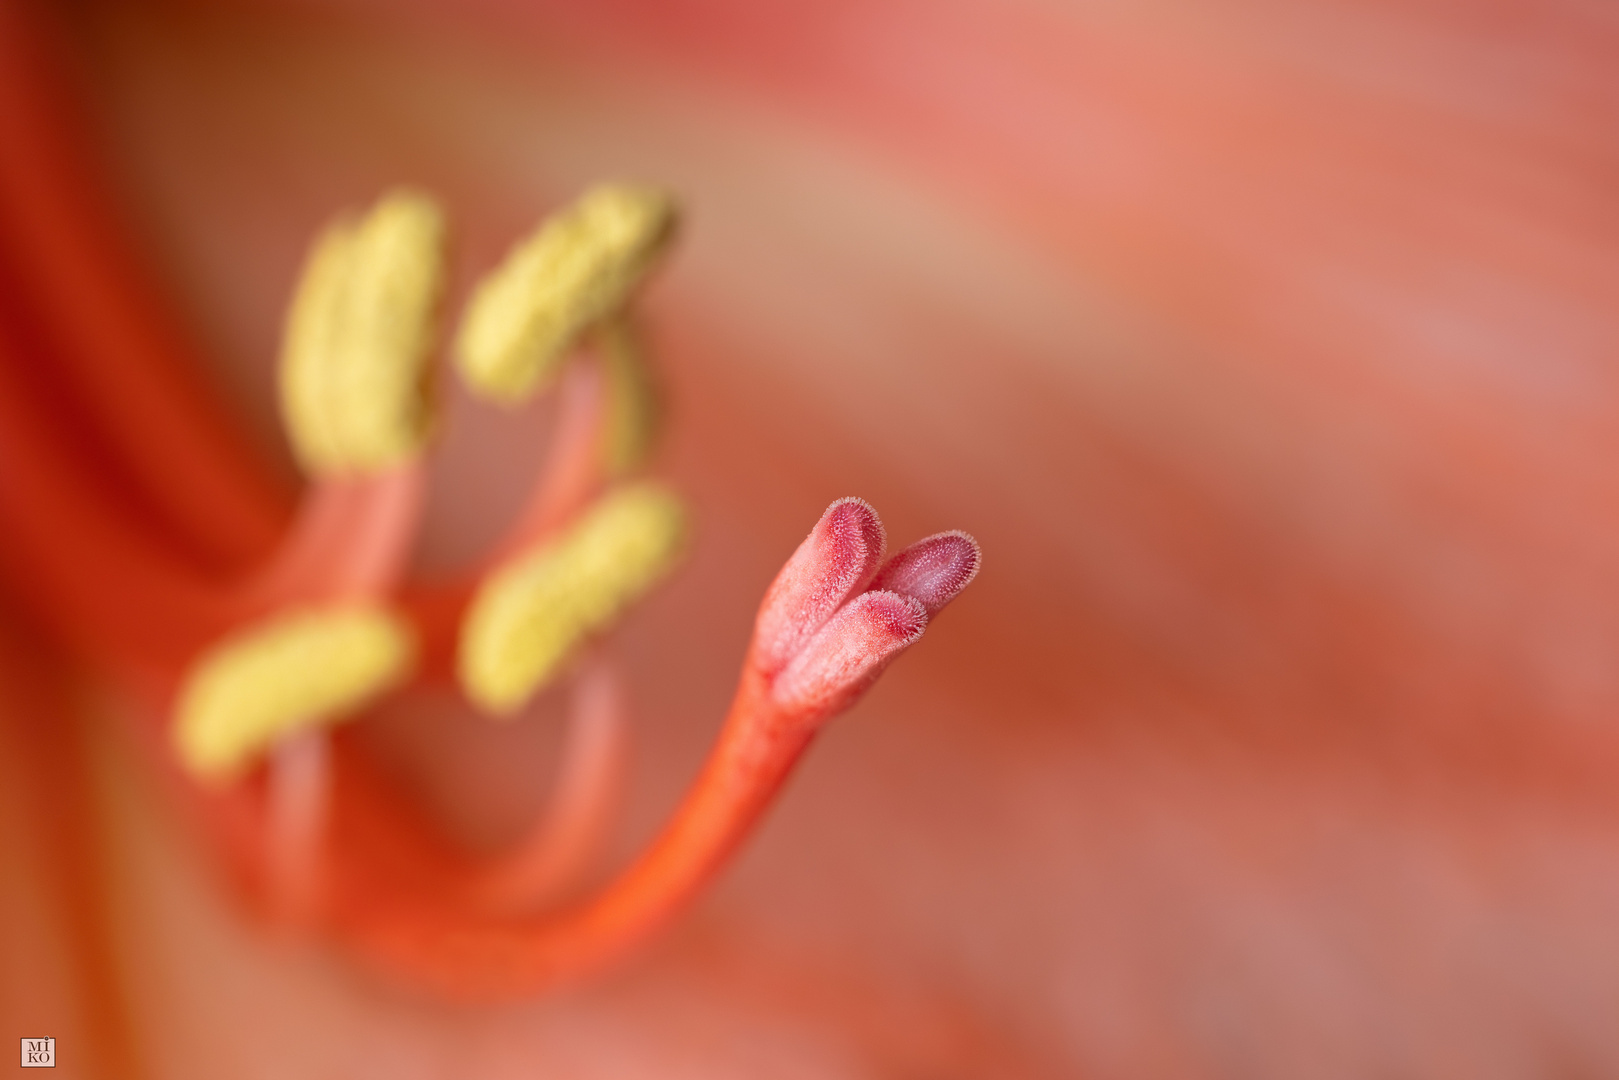 Blütenstempel einer Amaryllis